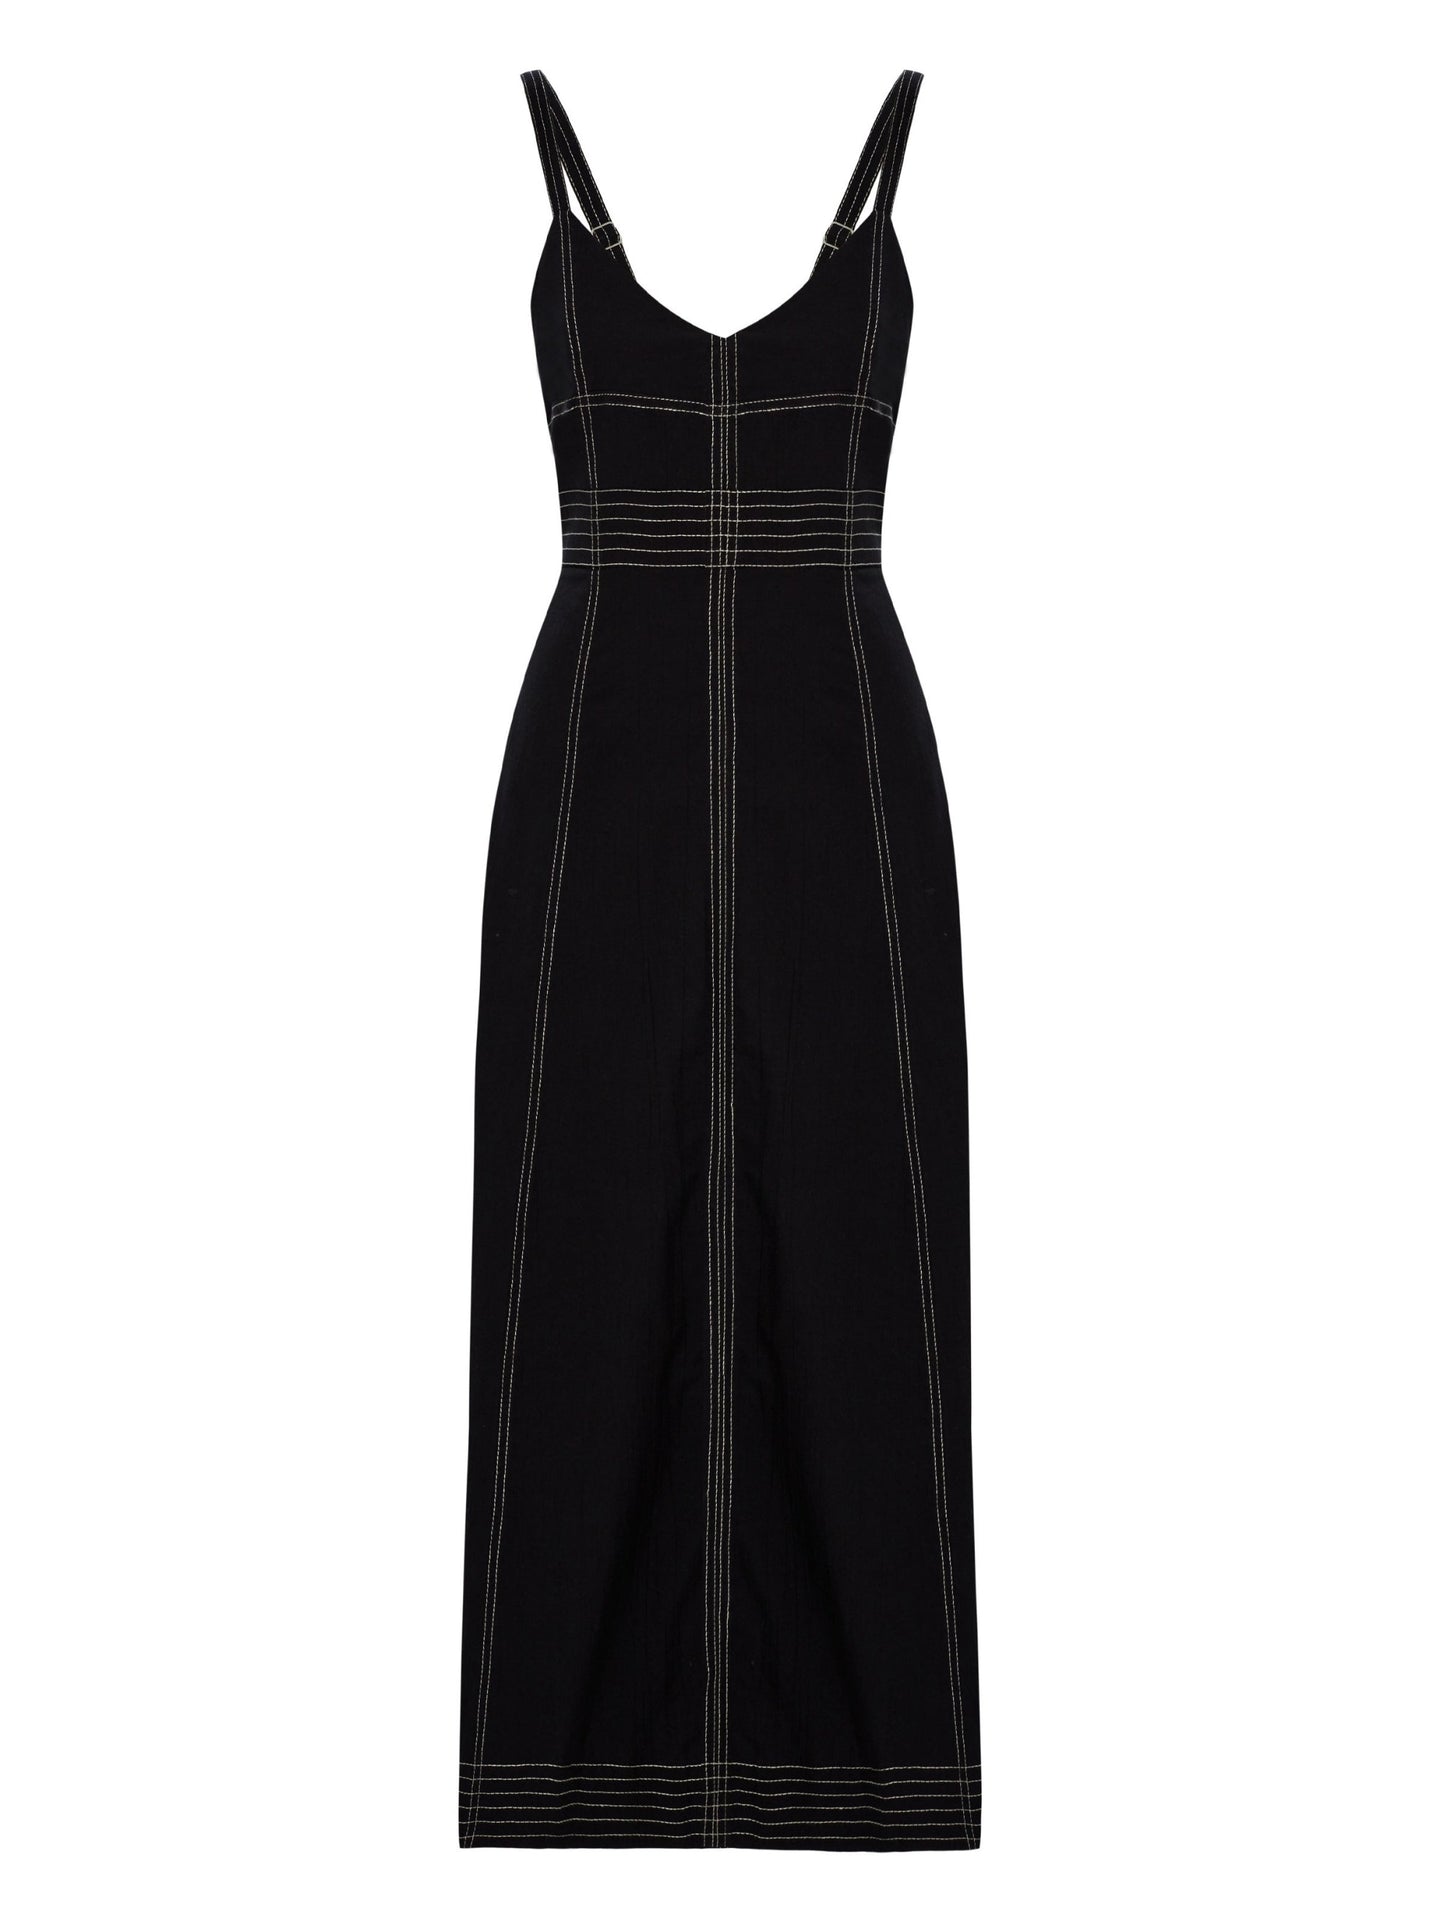 Eva Maxi Dress - Black by The Handloom